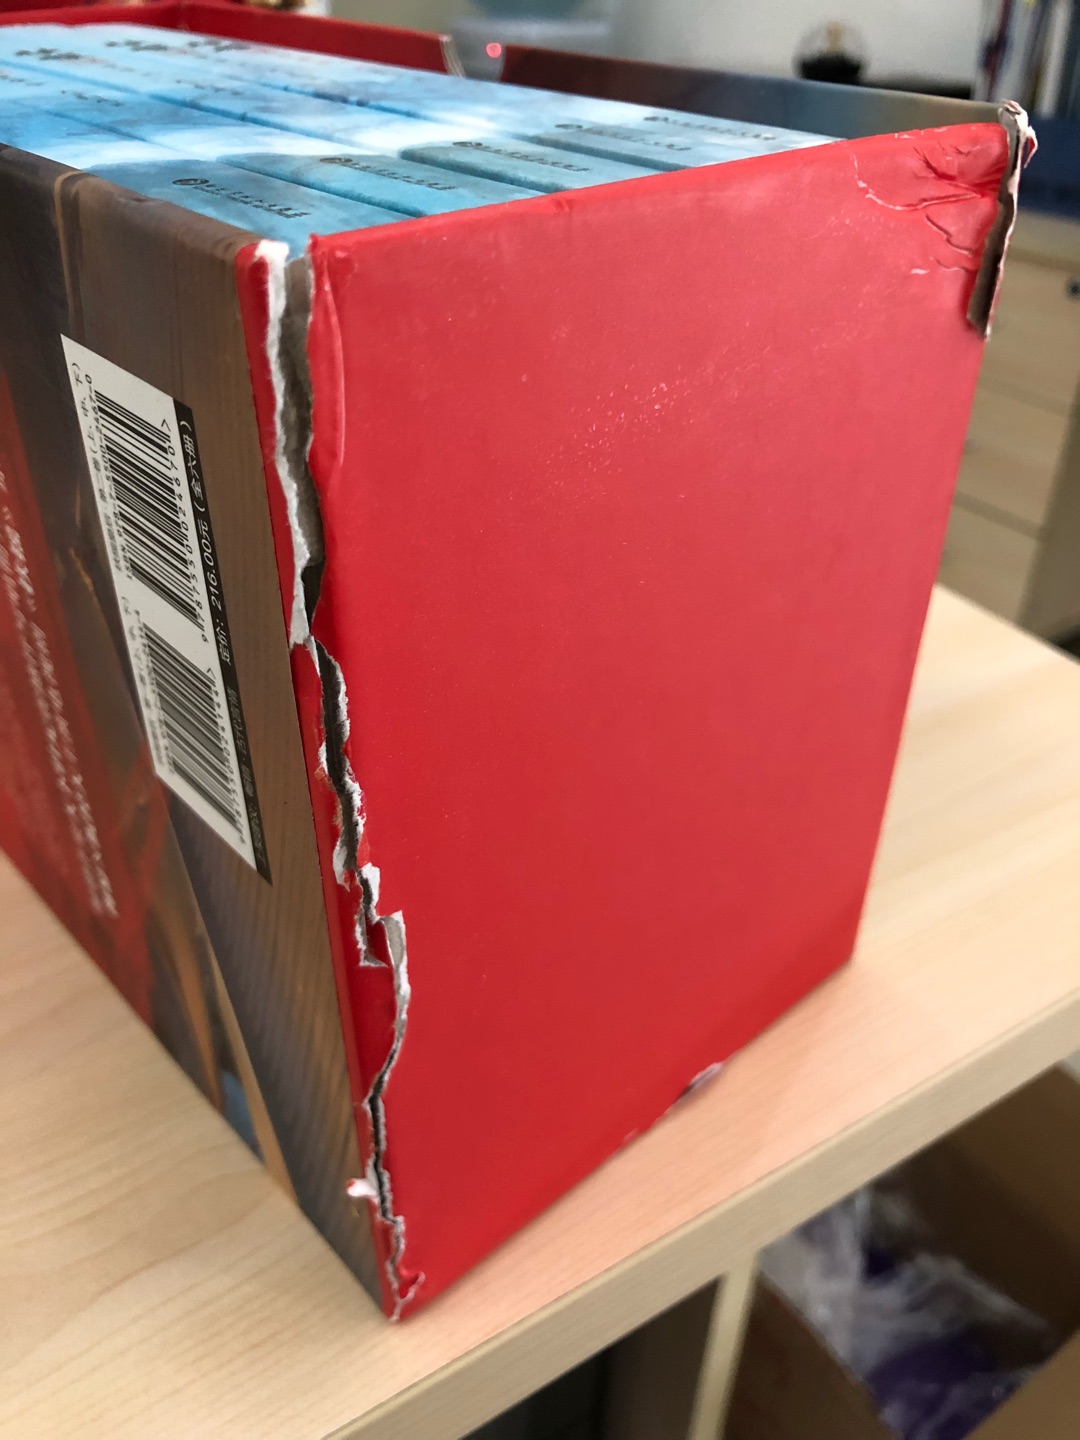 收到内包装盒就是坏的。看的是书，不是盒。就不计较了